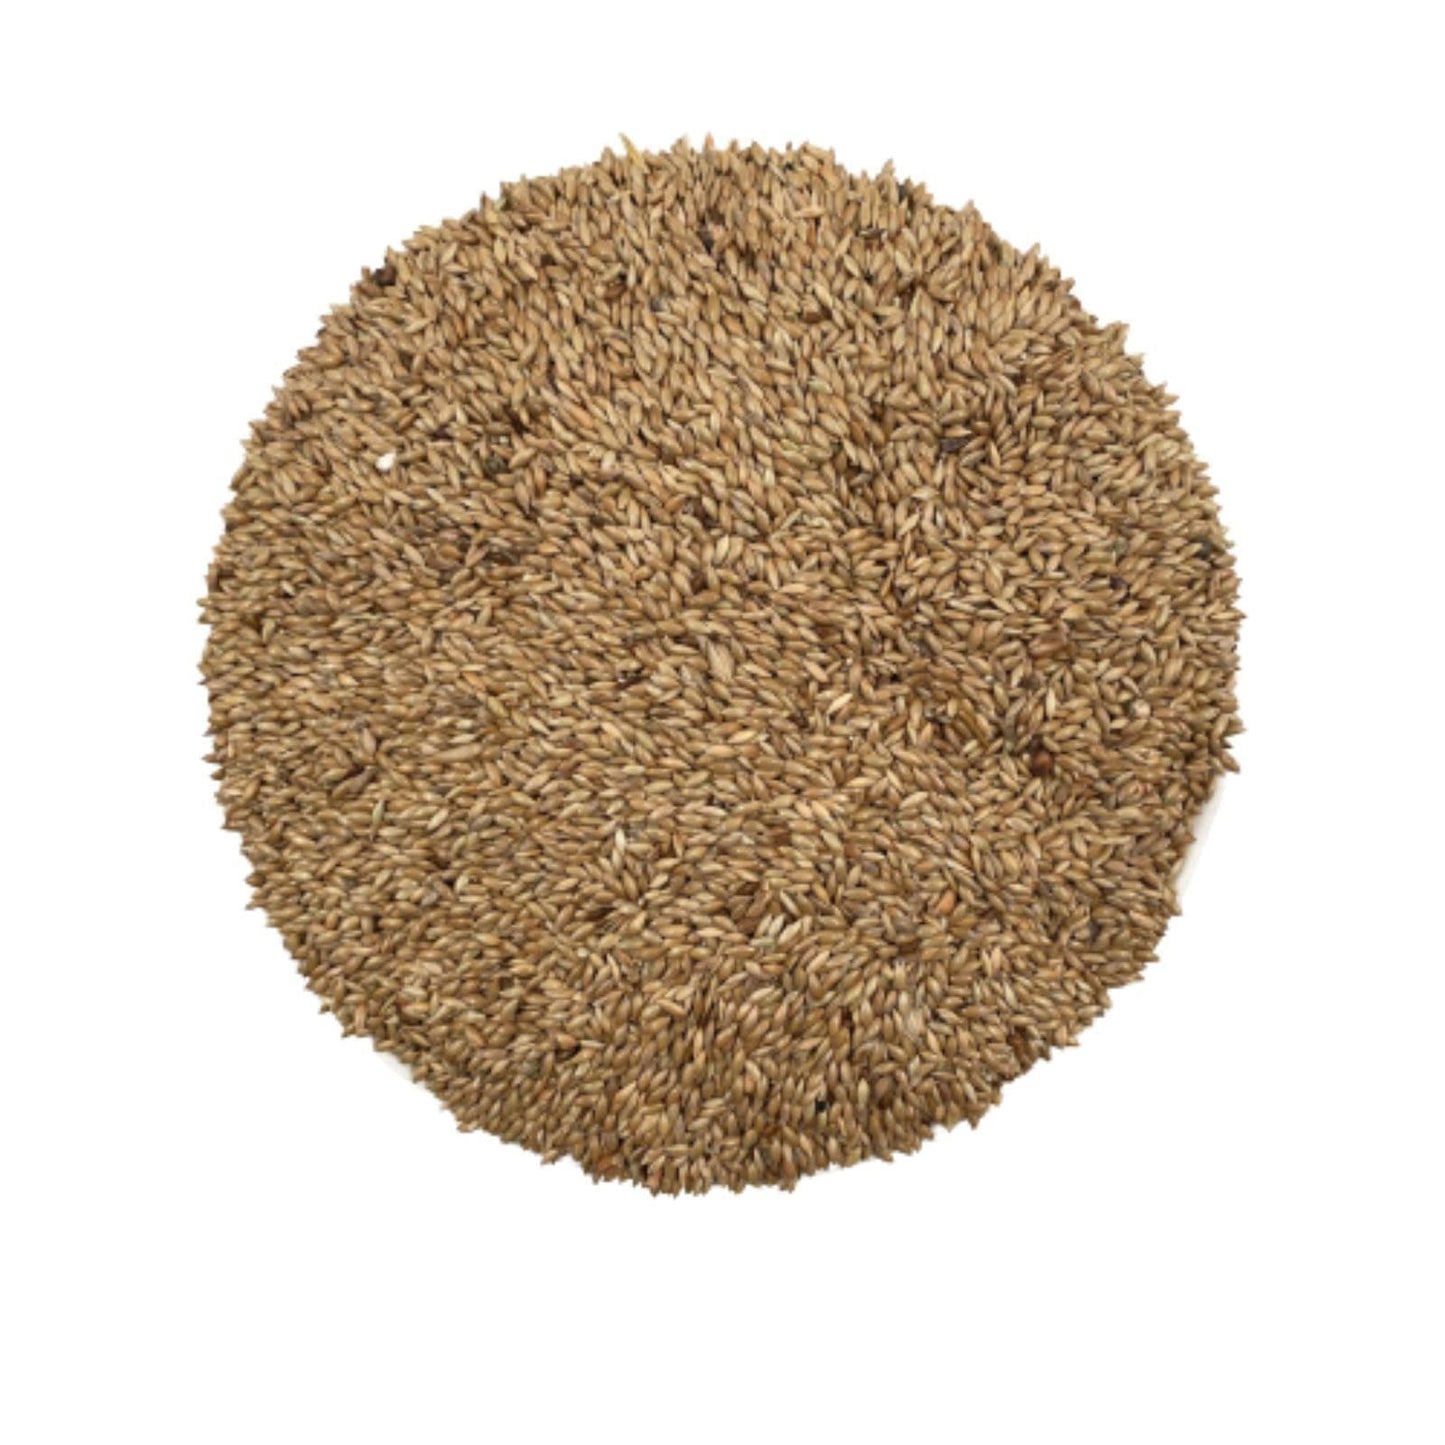 Seminte de iarba canarului 1 kg - DalisPet